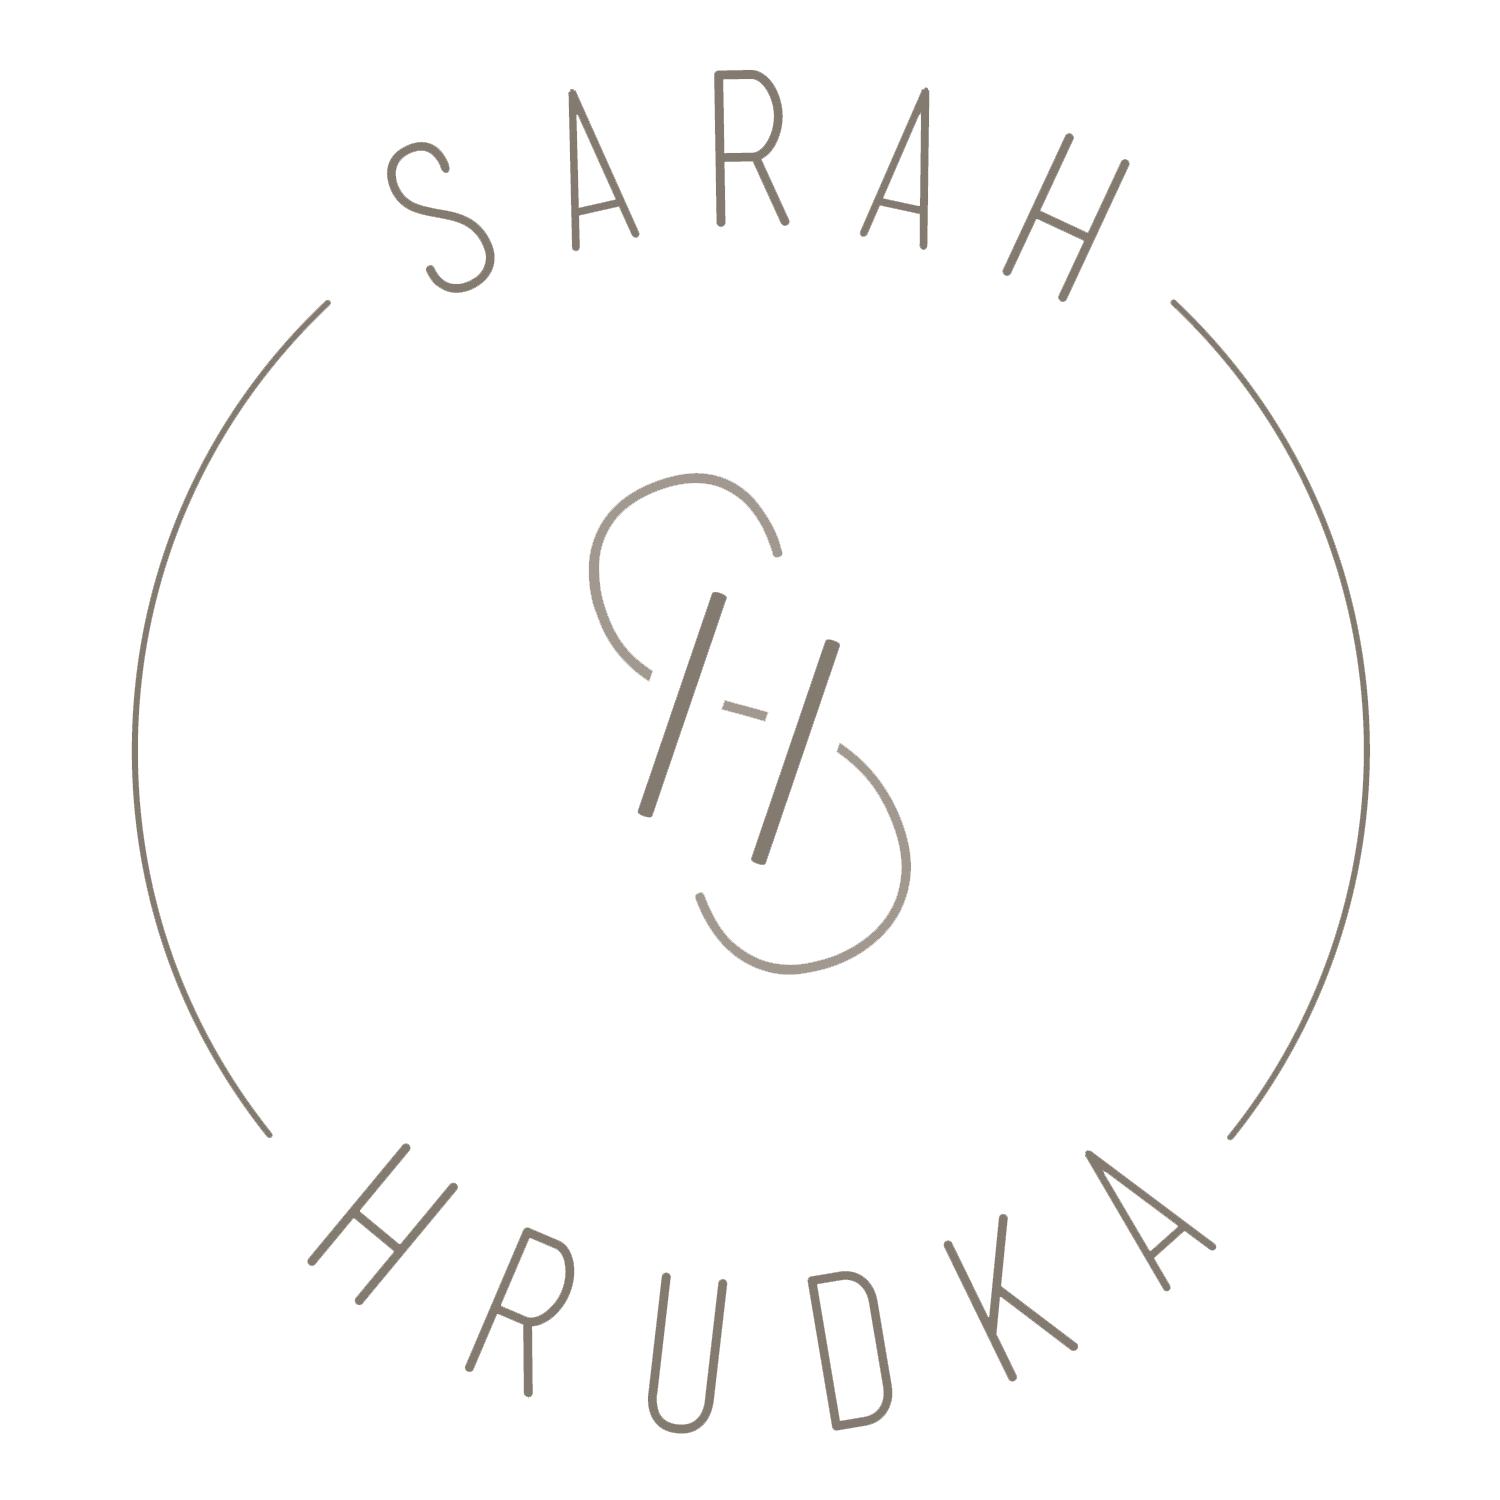 Sarah Hrudka